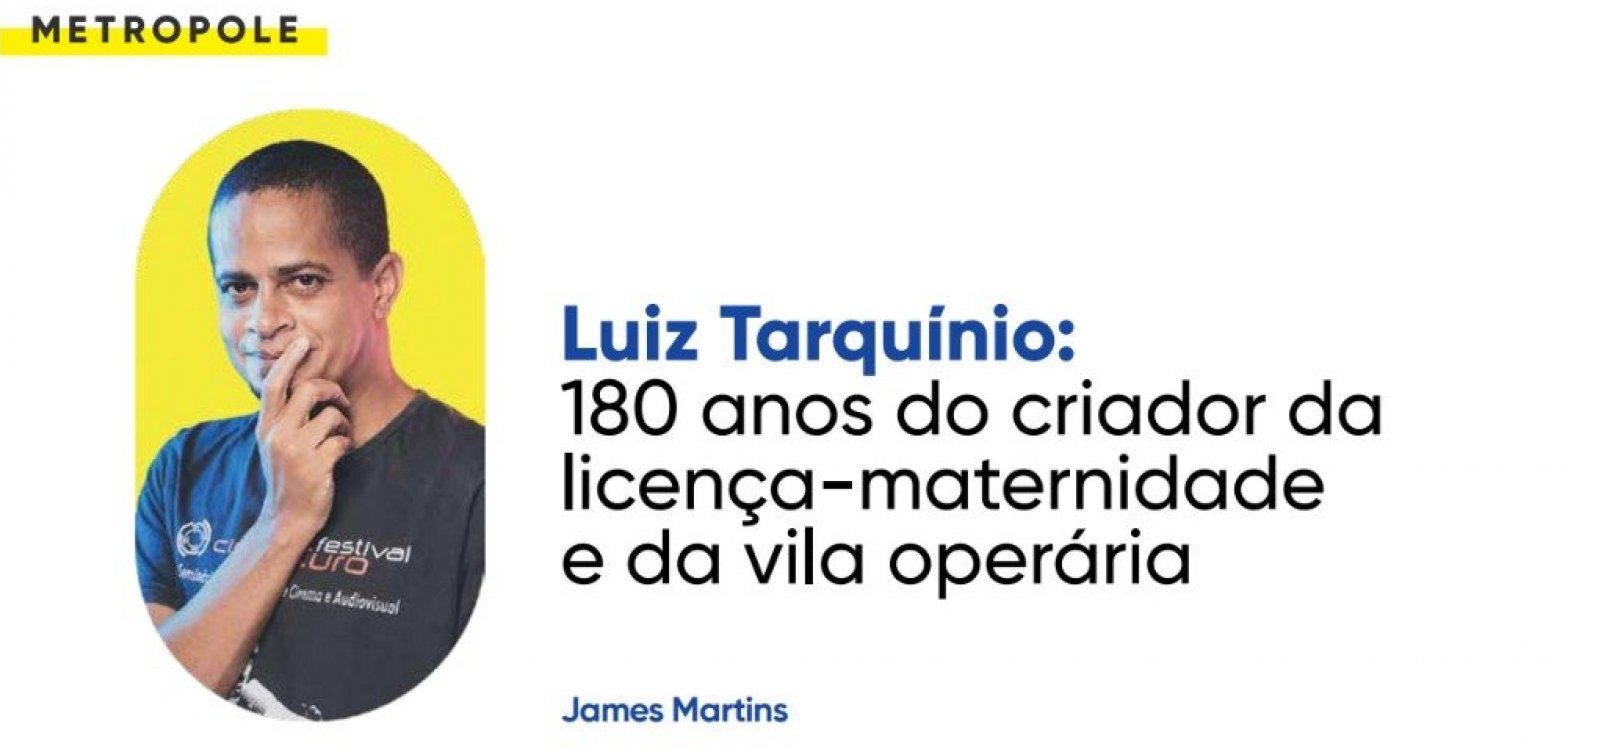 Luiz Tarquínio: 180 anos do criador da licença-maternidade e da vila operária